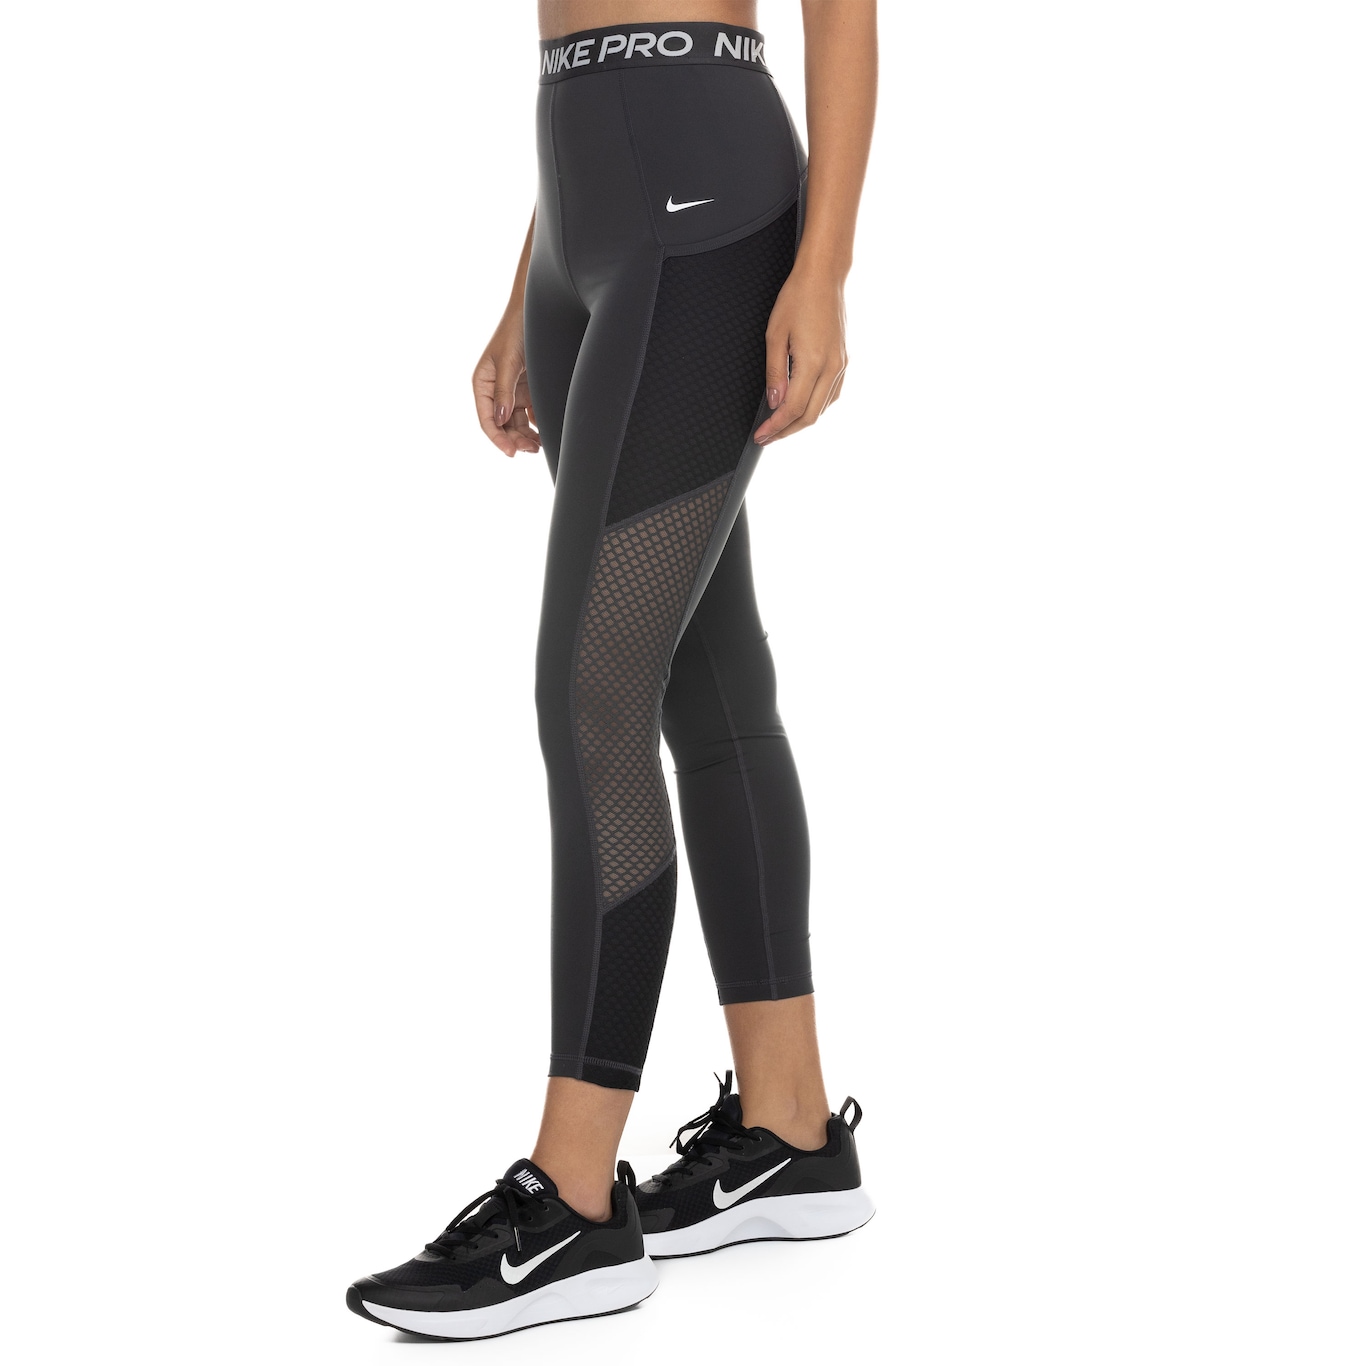 Calça Legging Feminina Nike One GRX 7/8 Tight Fit em Promoção